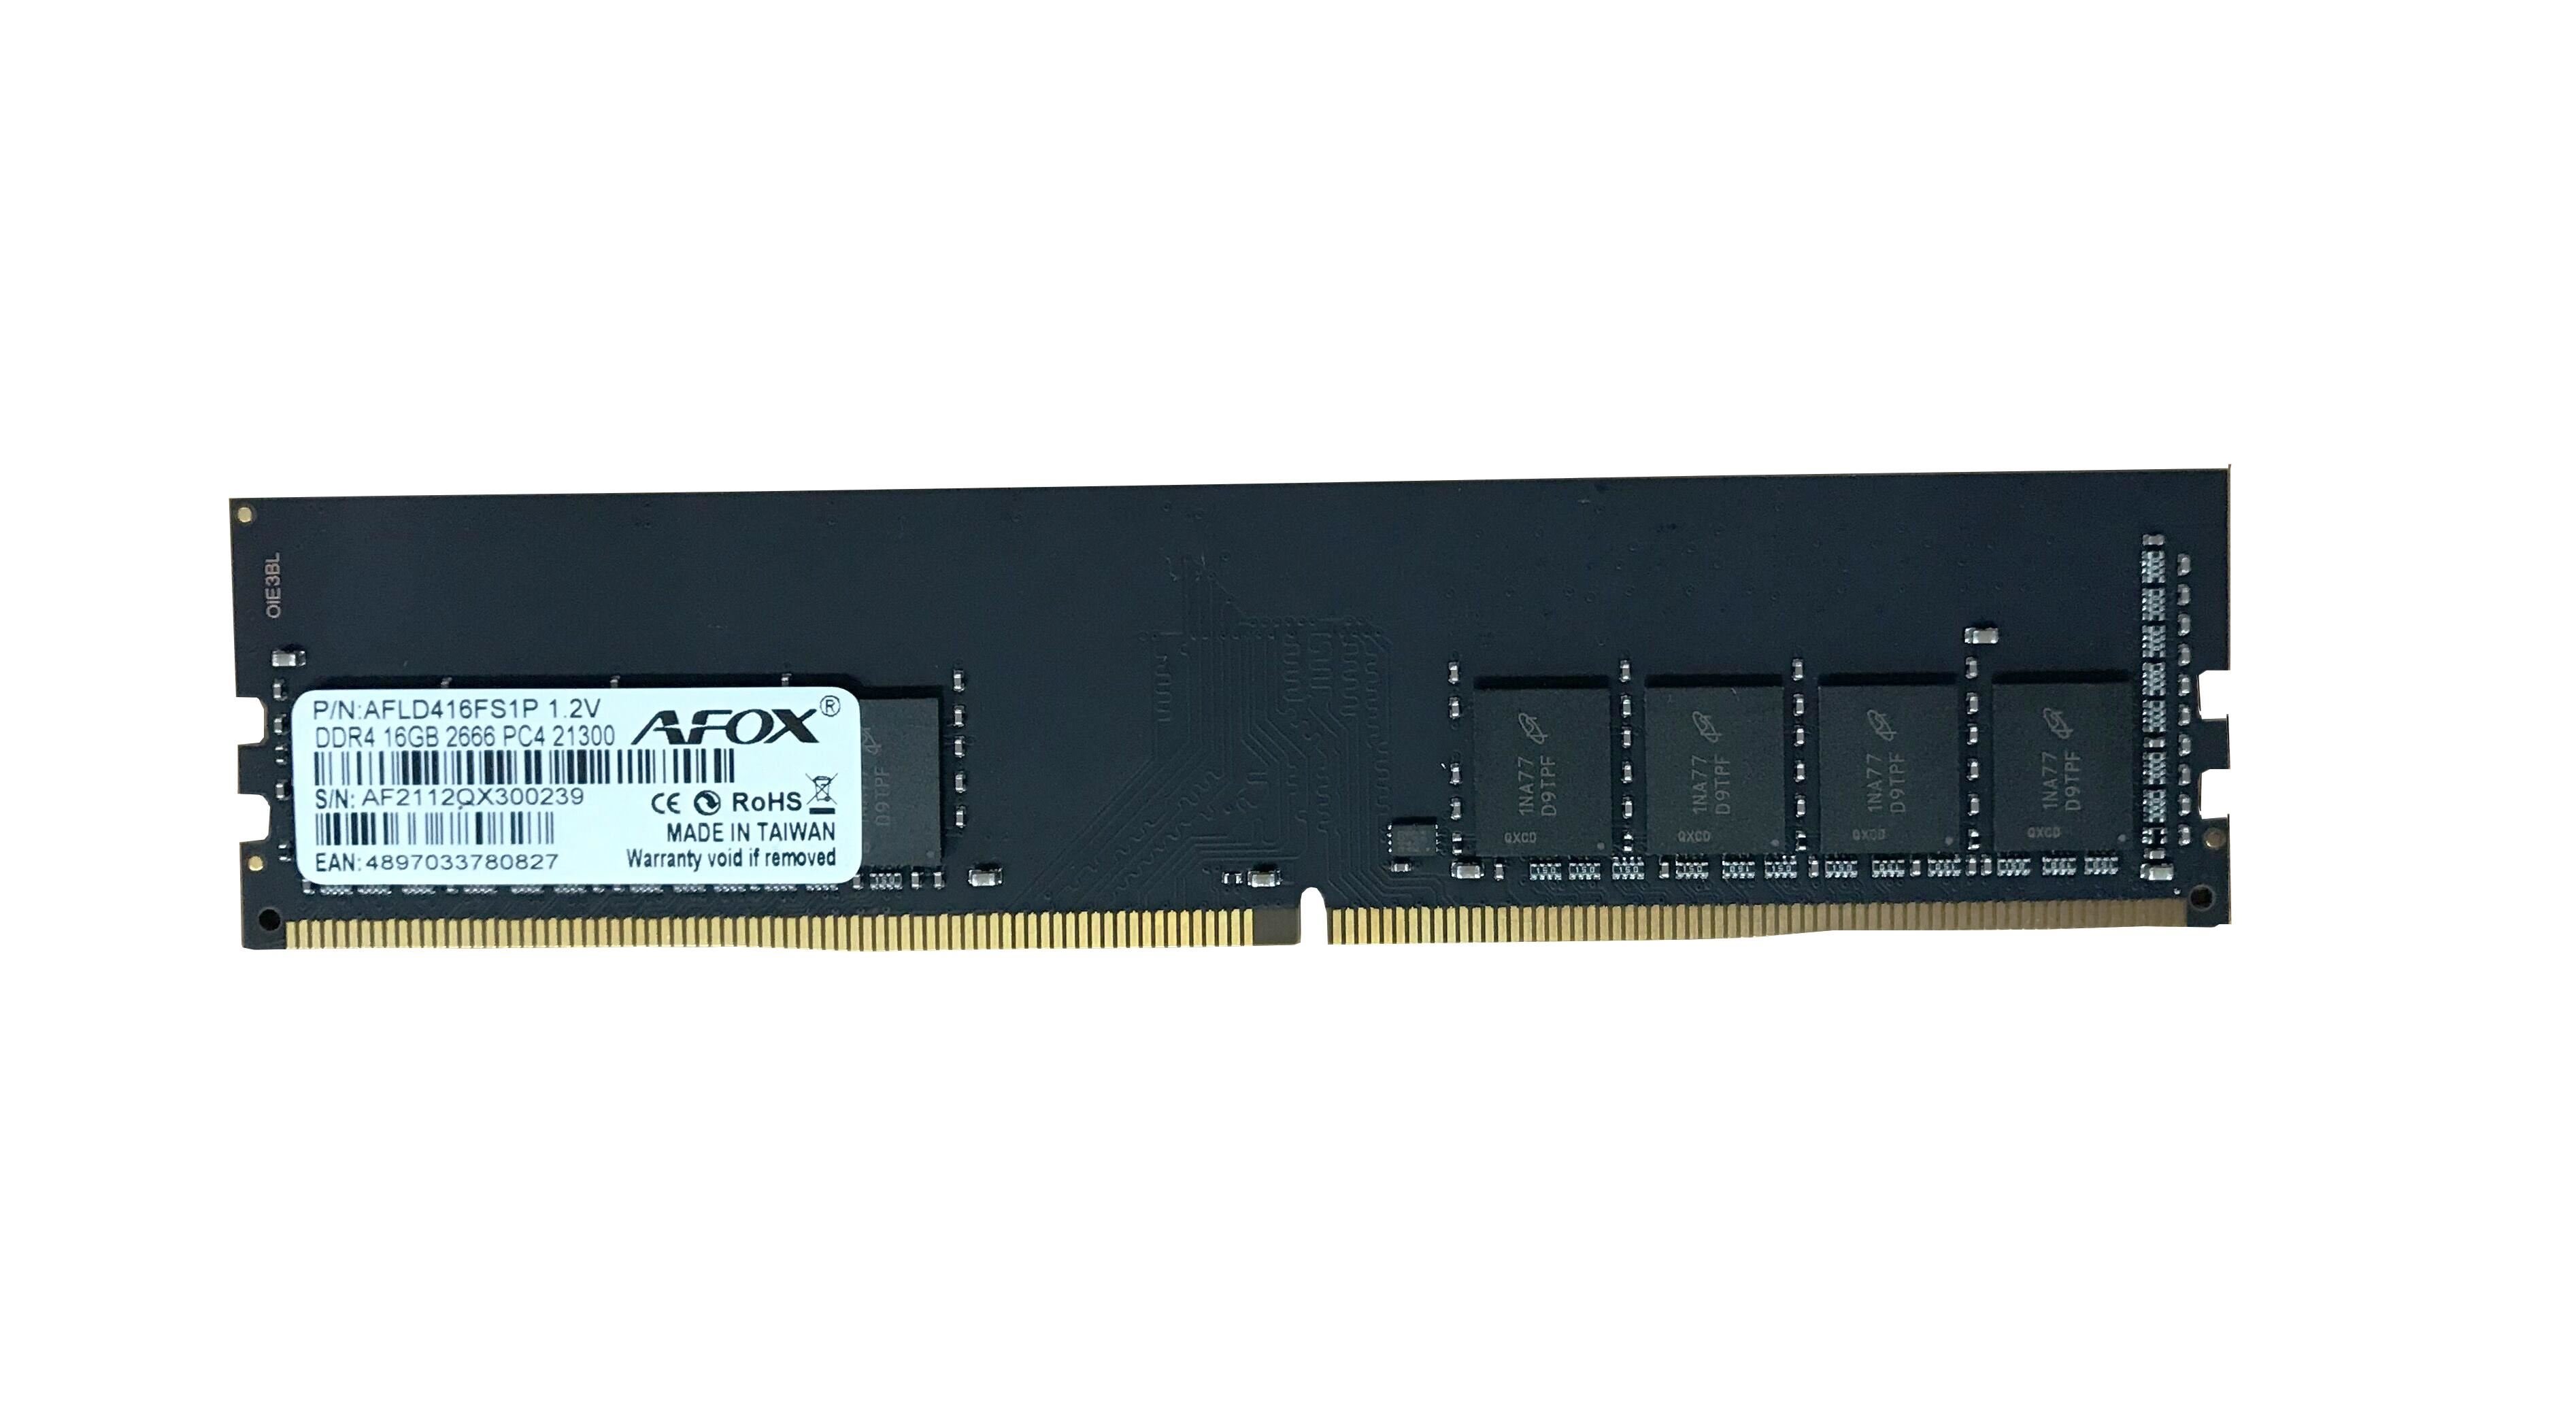 AFOX AFLD416FS1P 16GB 2666Mhz DDR4 LONGDIMM RAM